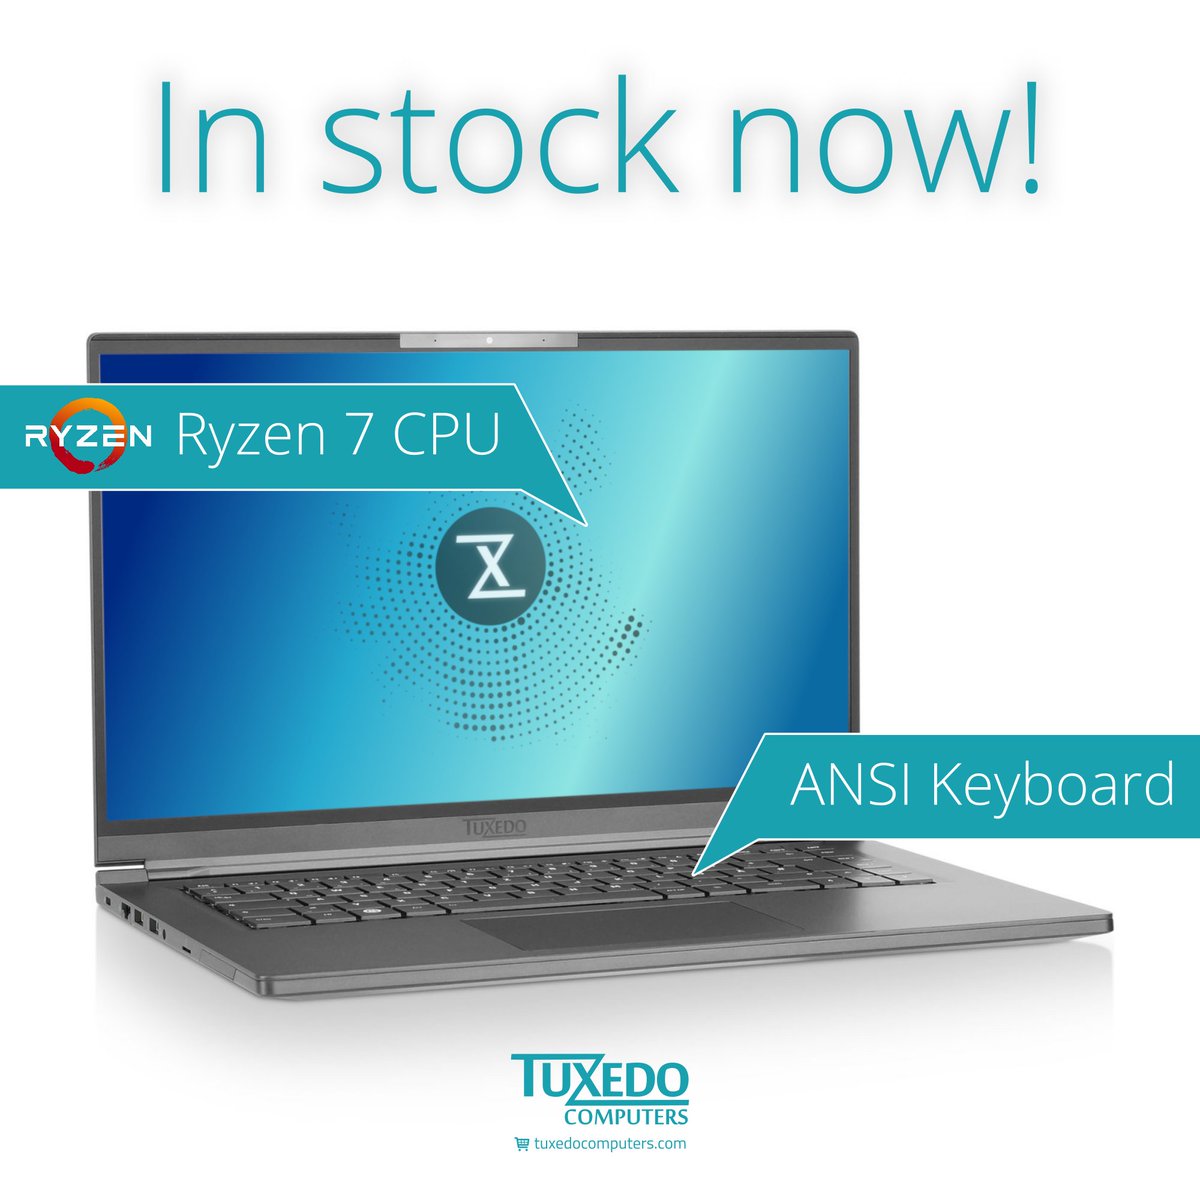 Ryzen CPU? ANSI keyboard? Here you go!
tuxedocomputers.com/pulse15

#Linux #Ubuntu #Ryzen7 #NowShipping